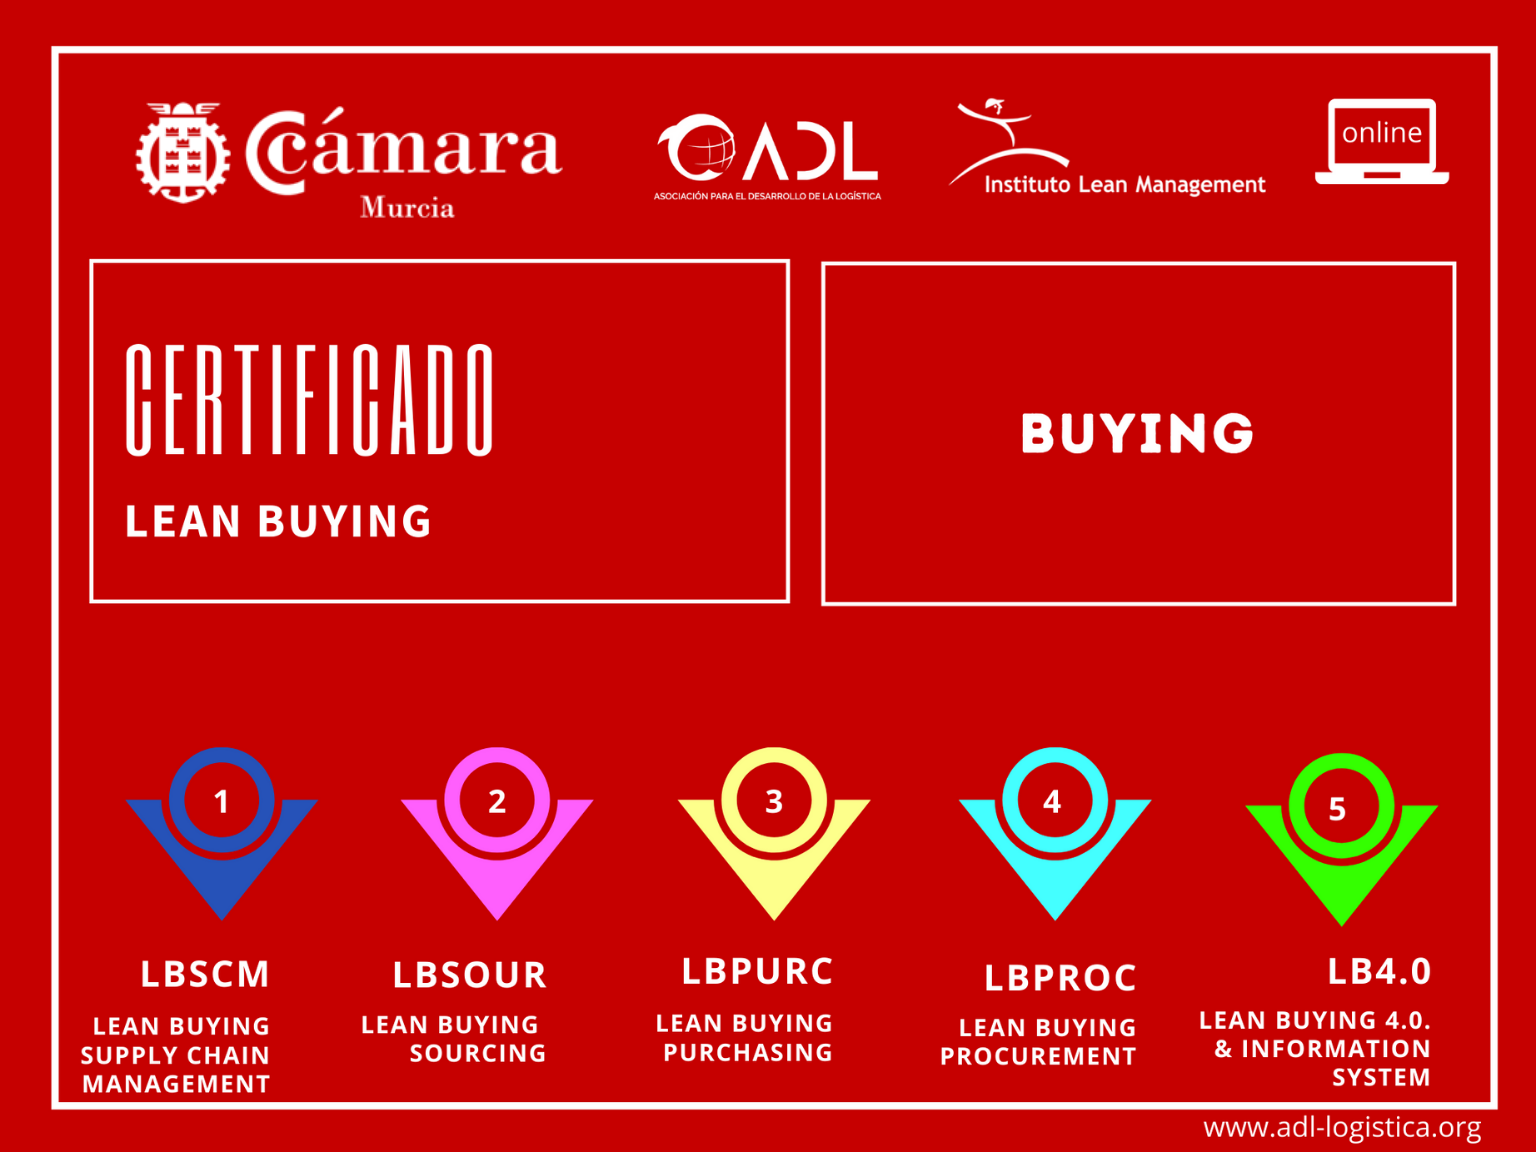 Certificado Lean Buying - Cámara de Comercio de Murcia